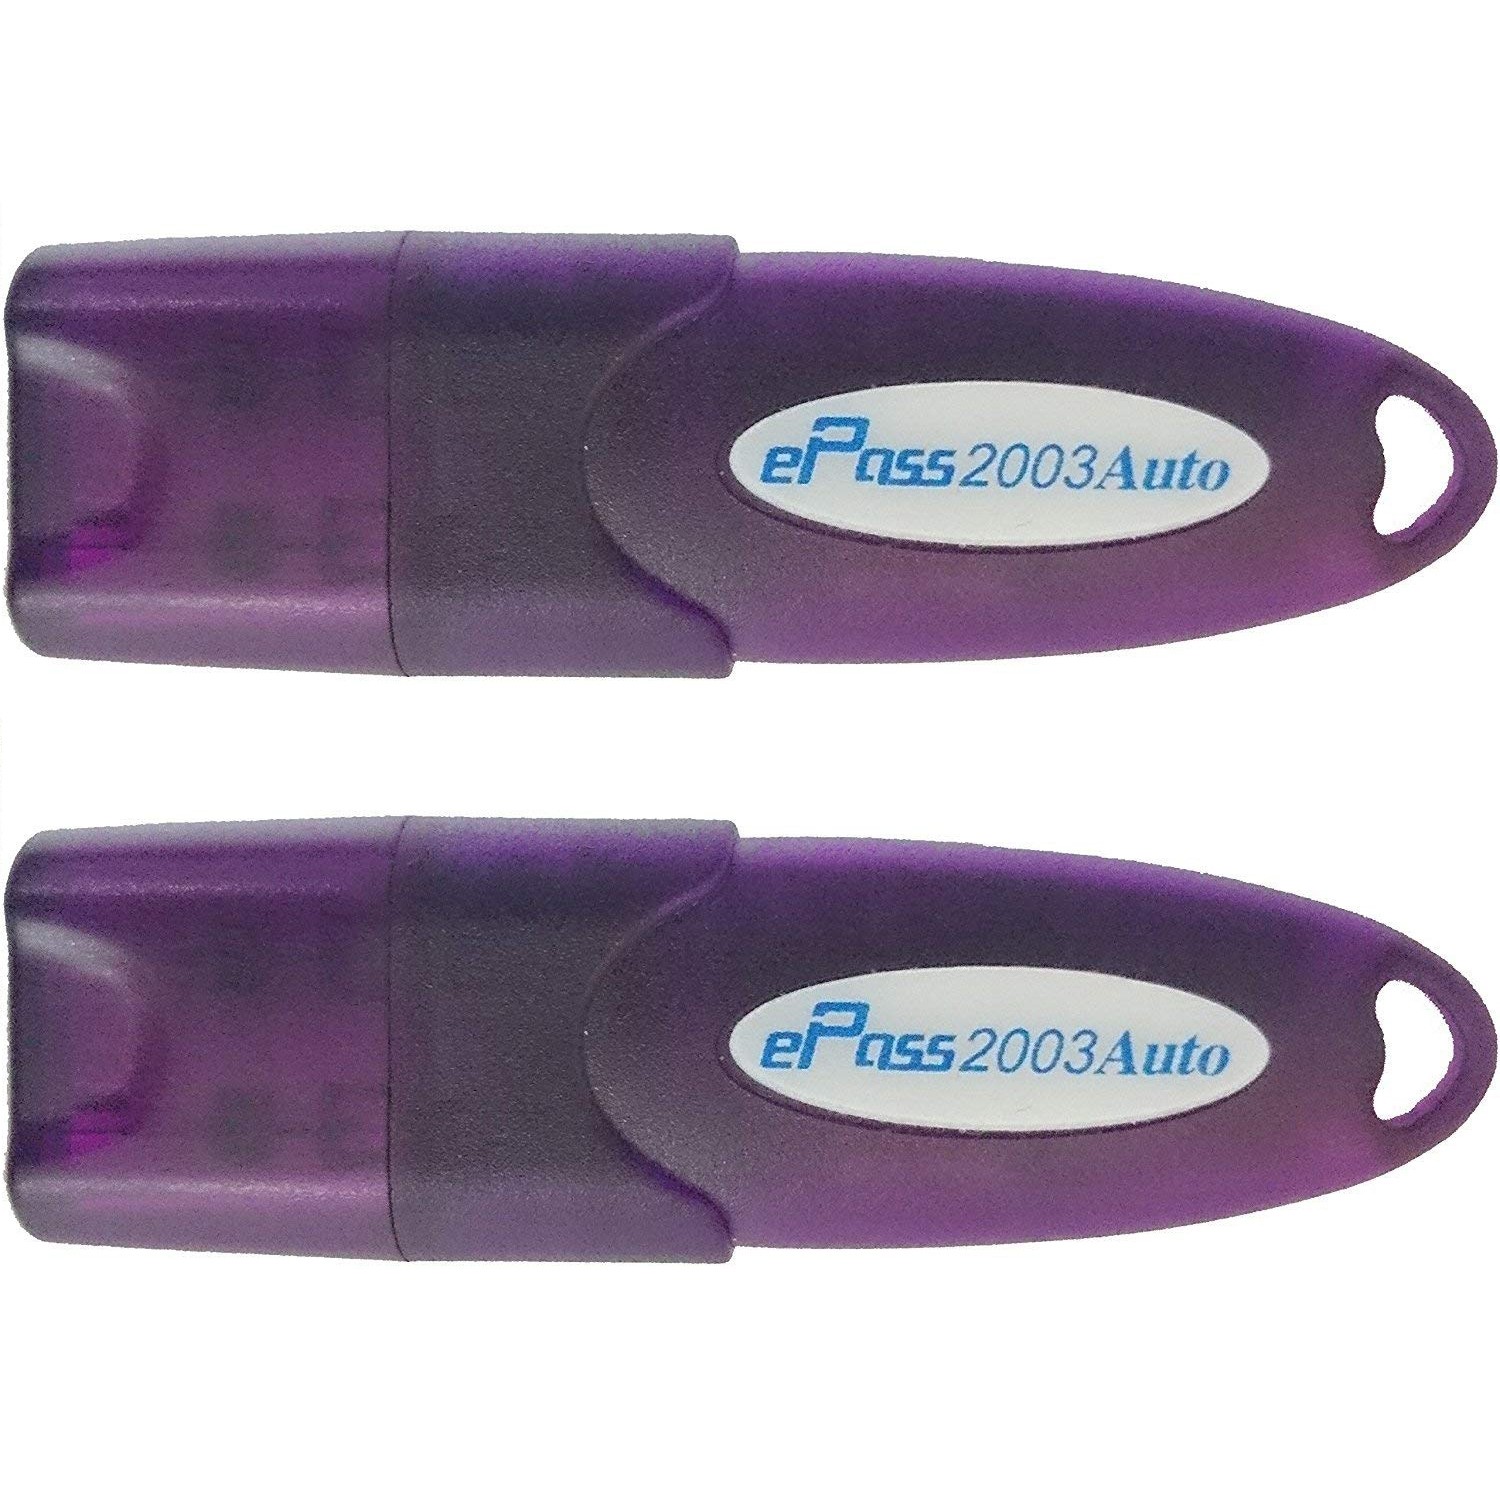 Epass 2003 Auto USB Token ( Pack of 2 )